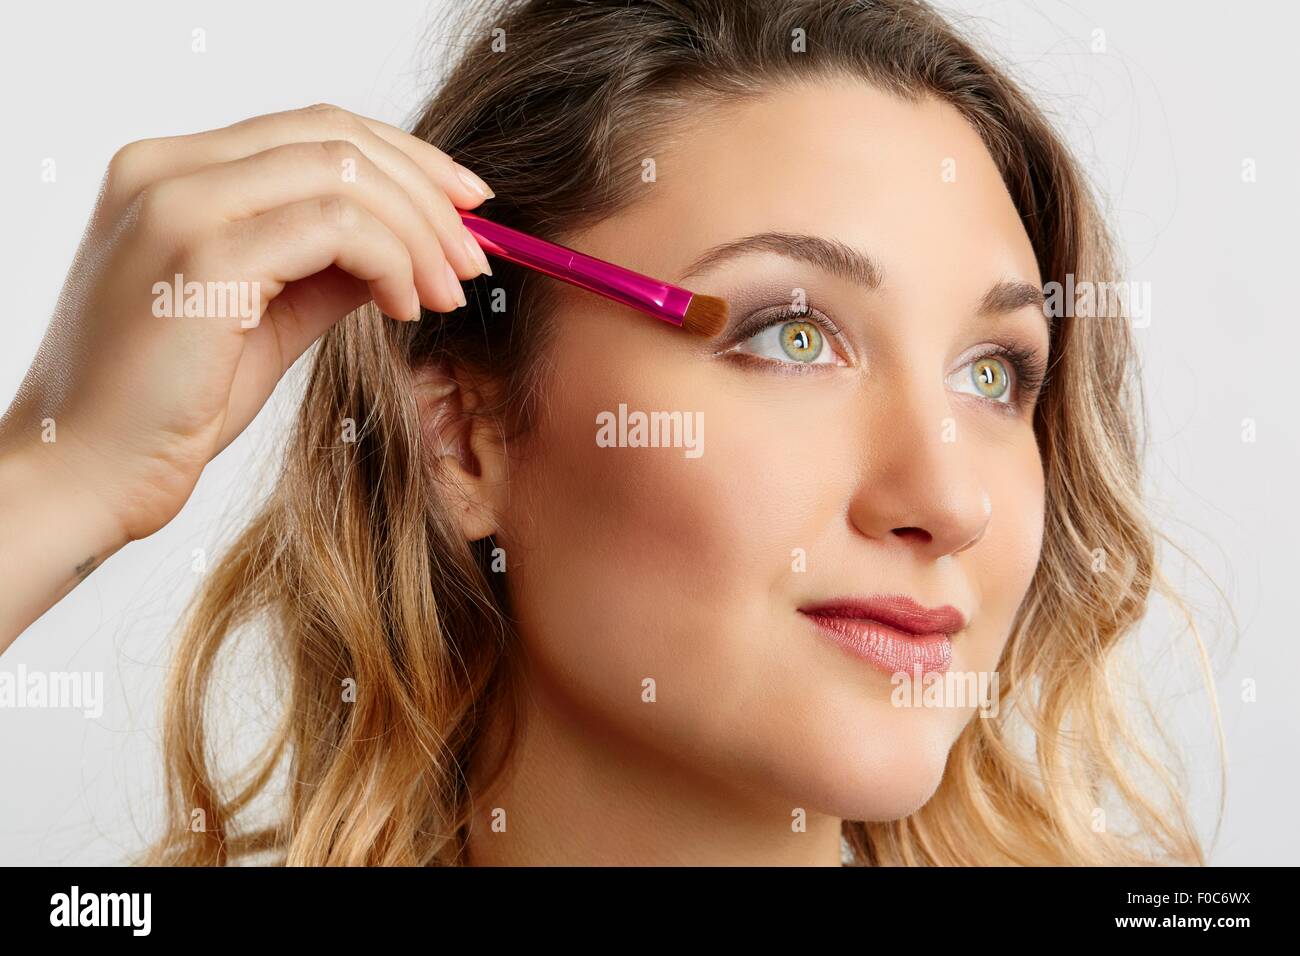 Young woman applying eyeshadow Stock Photo